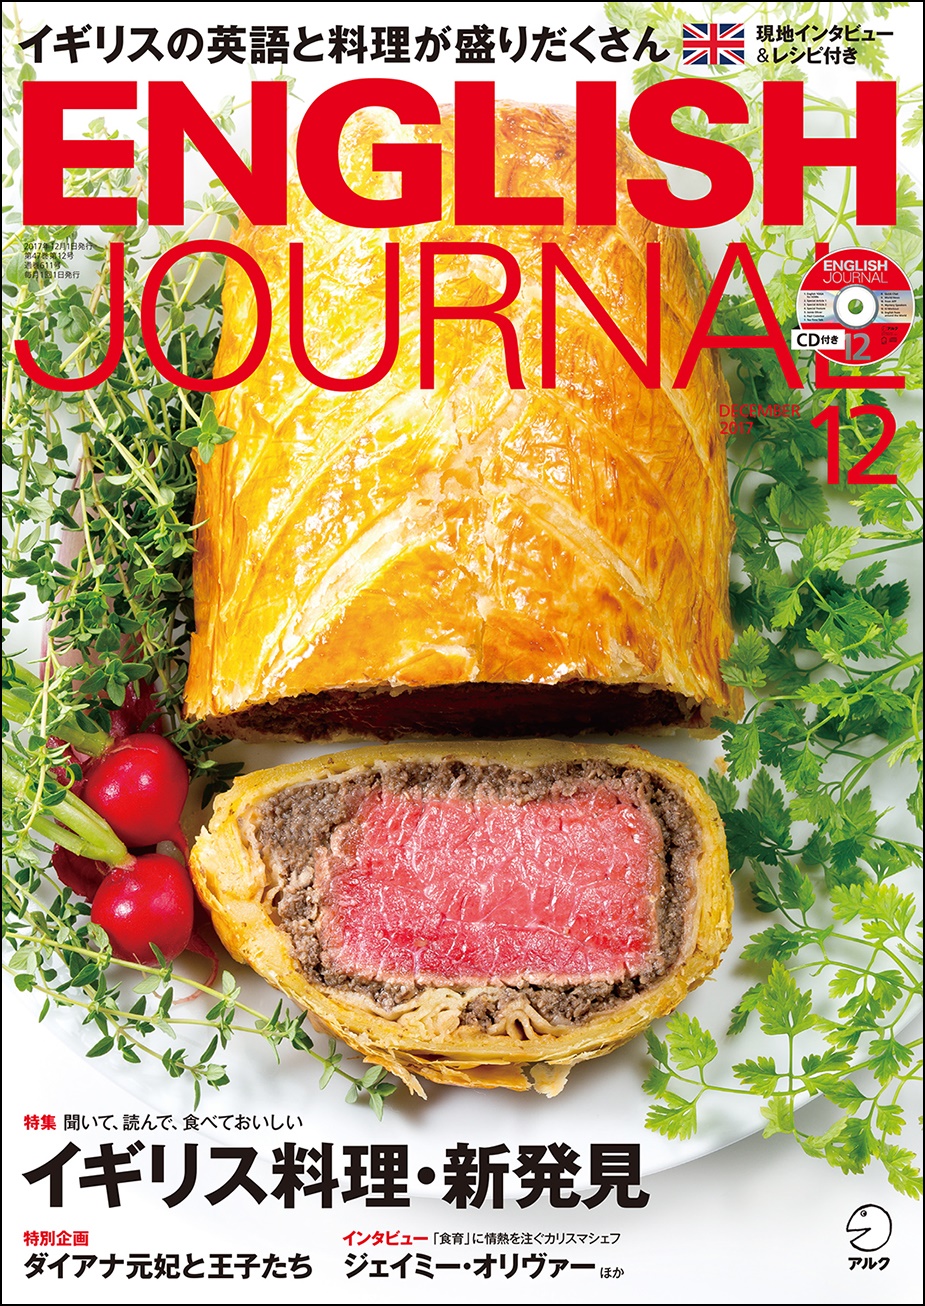 イギリスの英語と料理が盛りだくさん English Journal 17年12月号 11月6日発売 株式会社アルクのプレスリリース